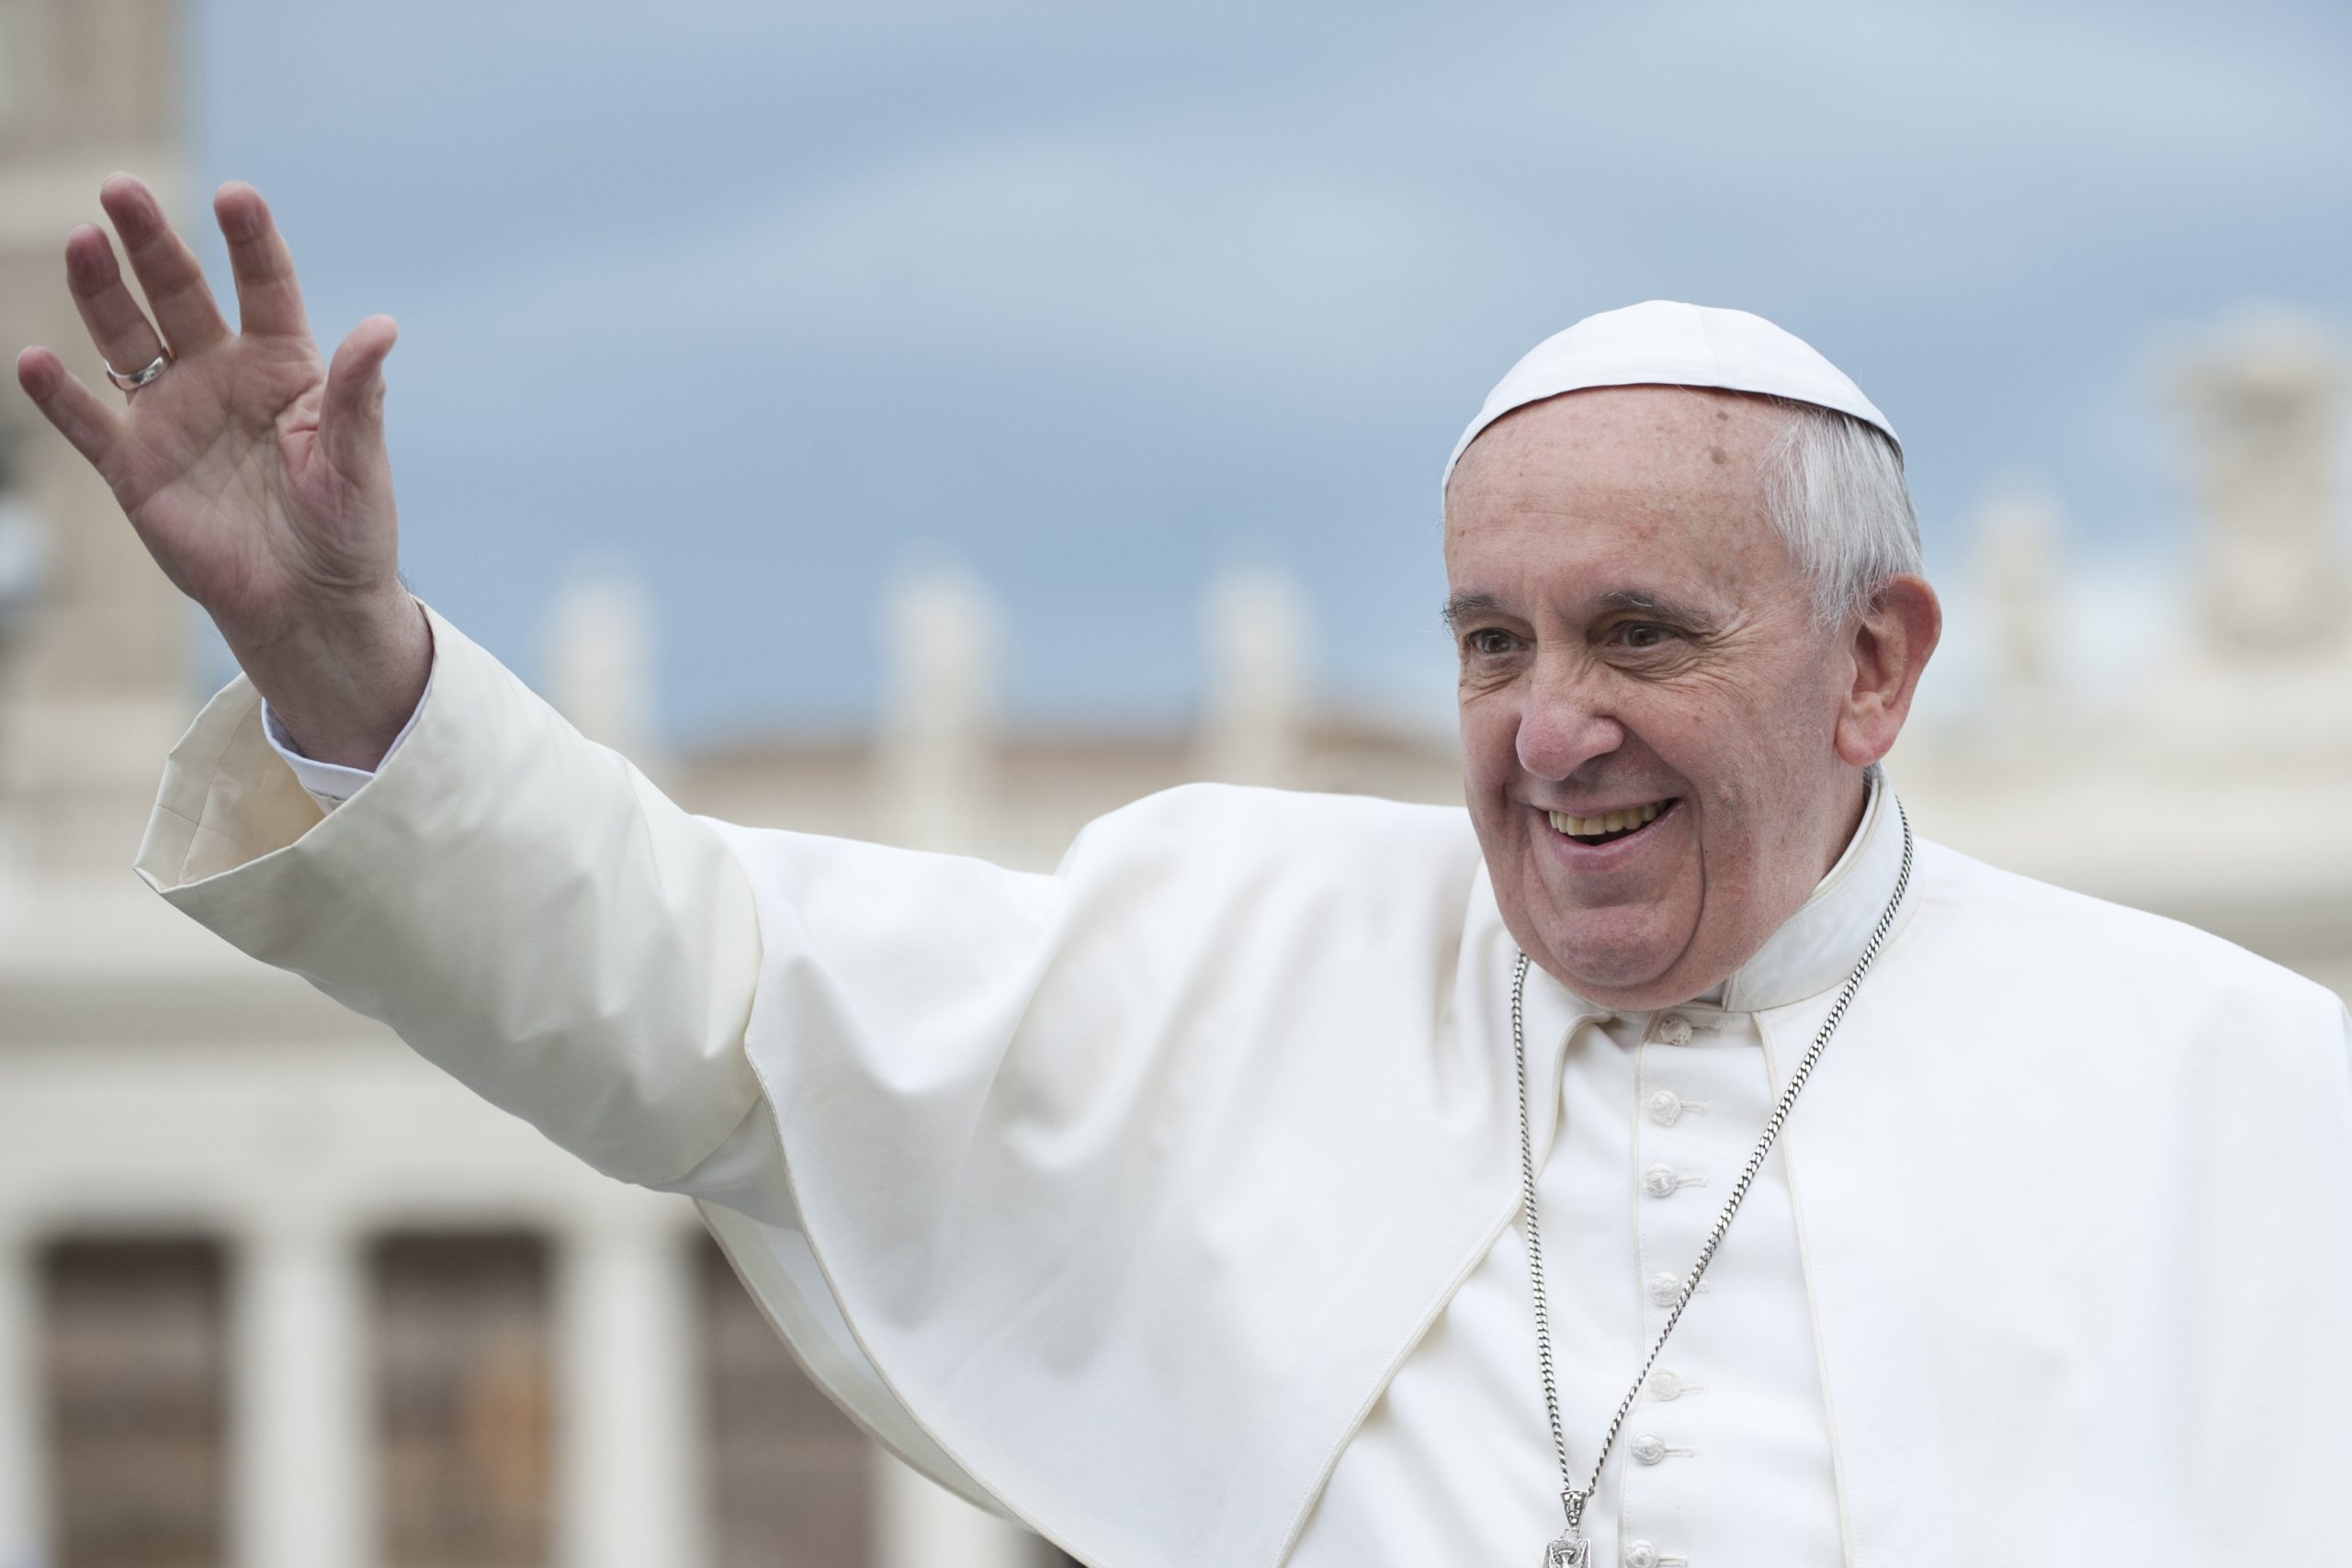 “Donne che guadagnano meno degli uomini”, per il Papa è uno scandalo